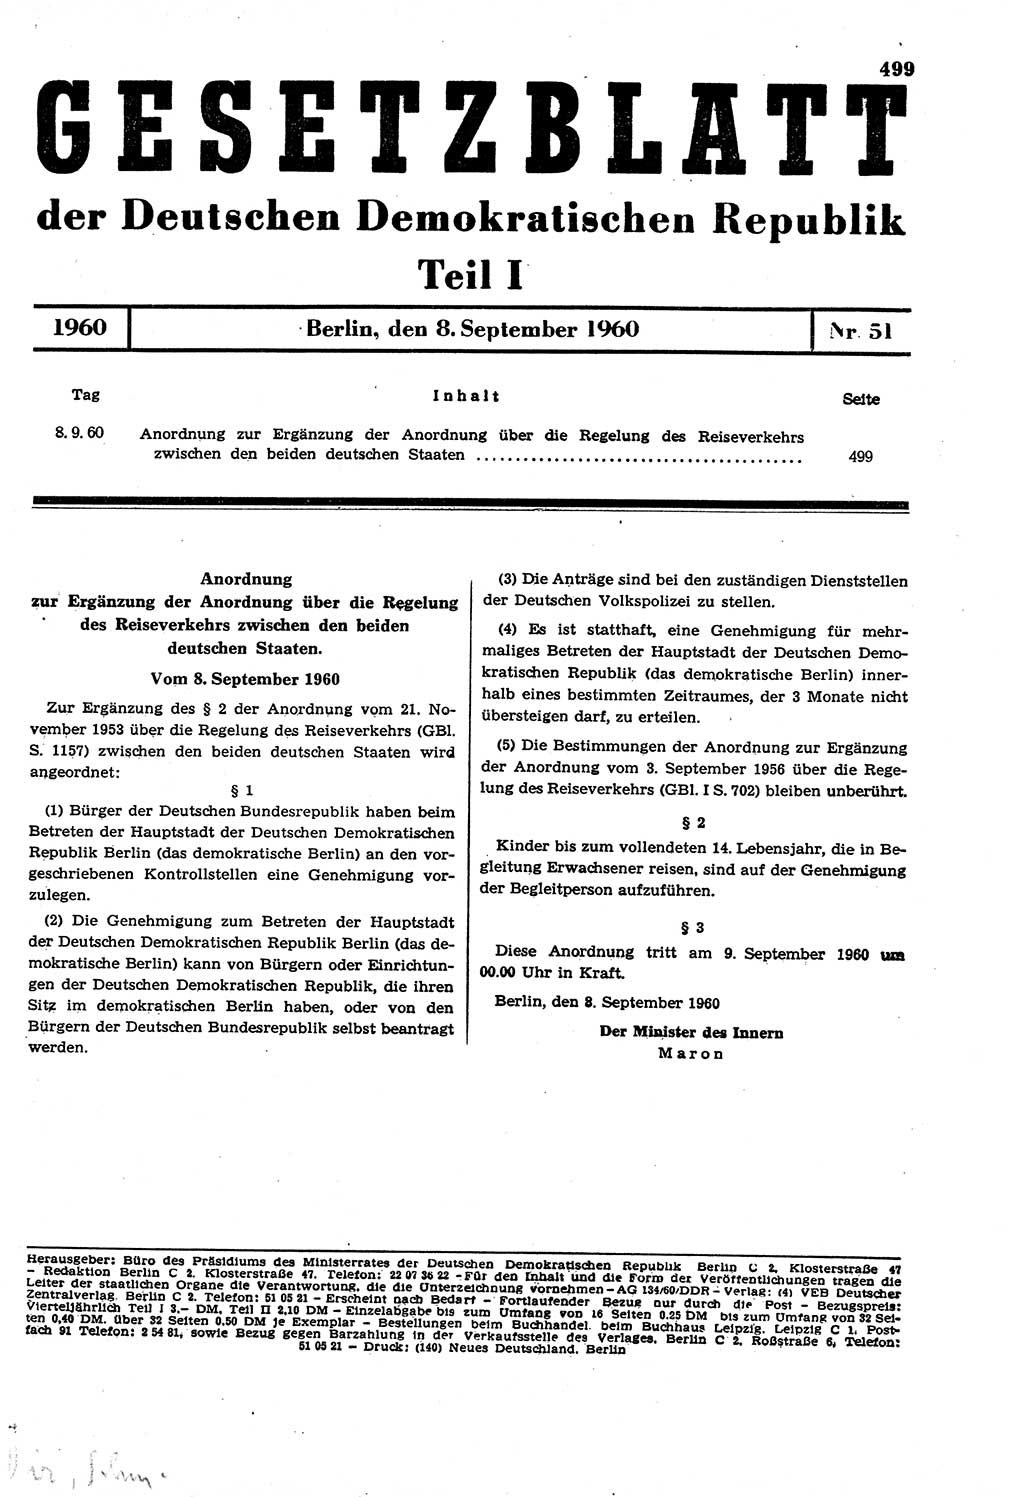 Gesetzblatt (GBl.) der Deutschen Demokratischen Republik (DDR) Teil Ⅰ 1960, Seite 499 (GBl. DDR Ⅰ 1960, S. 499)